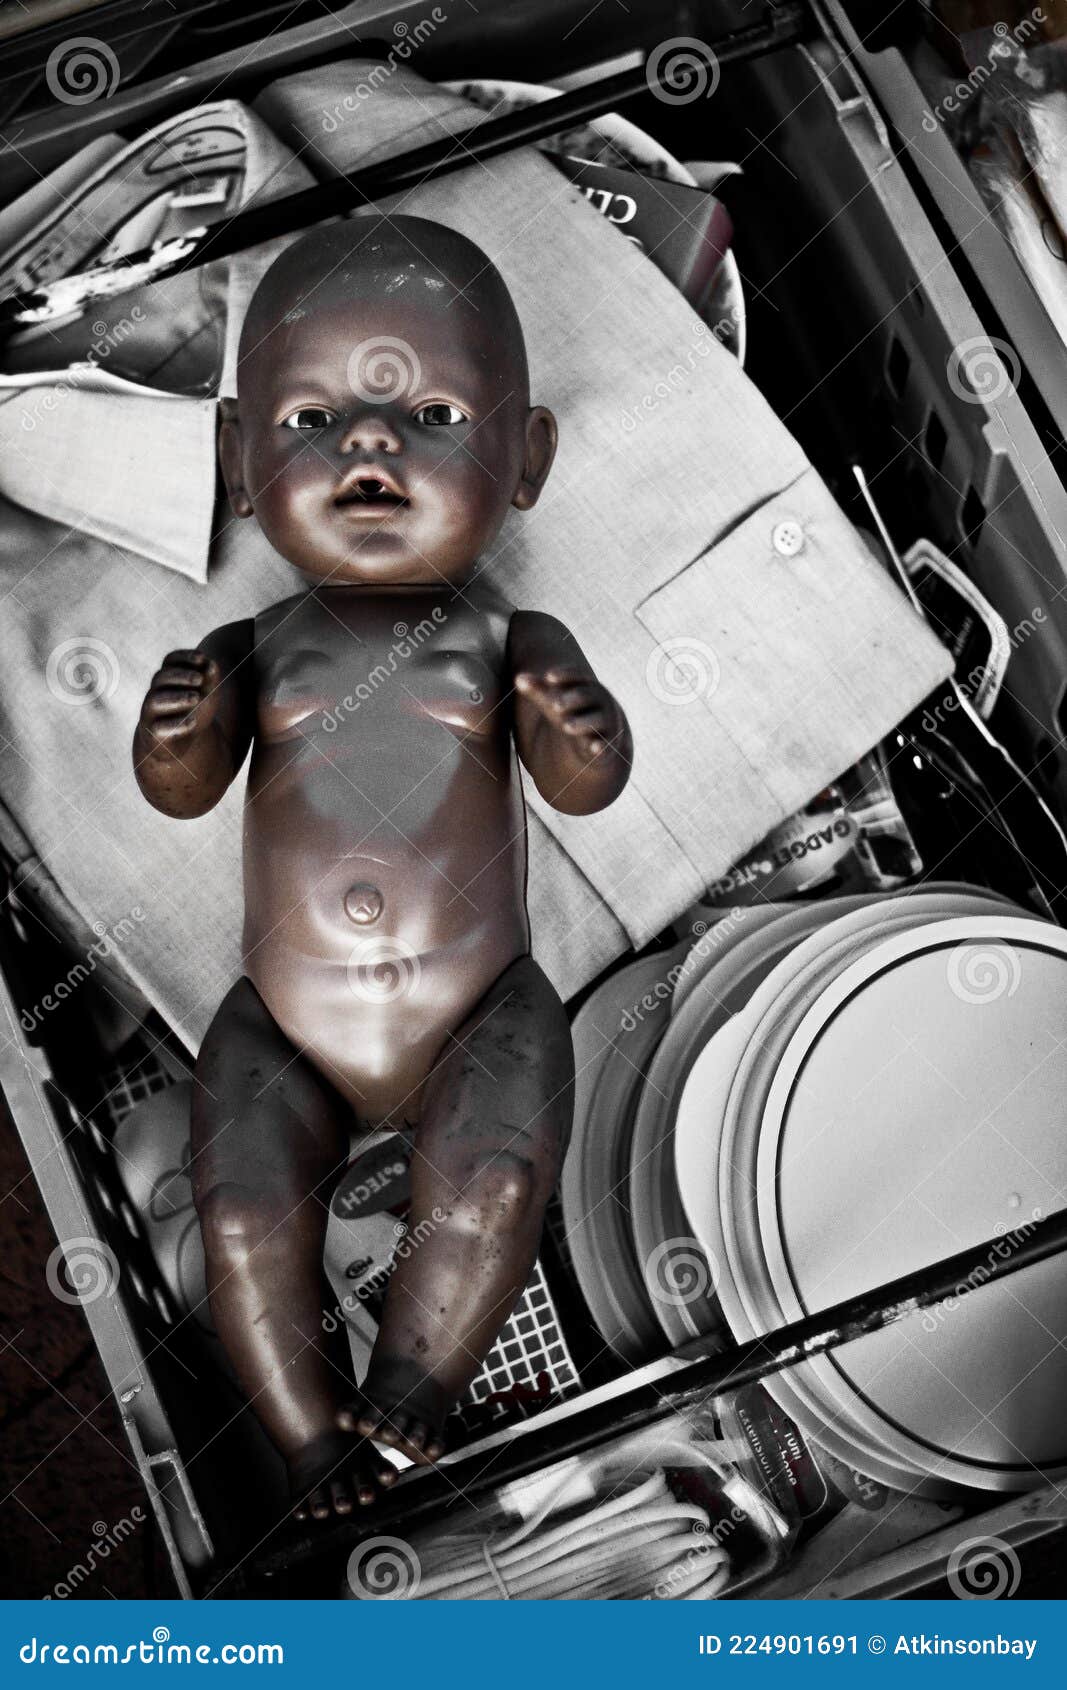 Muñeca De Bebé Desechada En Cesta Imagen de archivo - Imagen de sentada, muchacho: 224901691